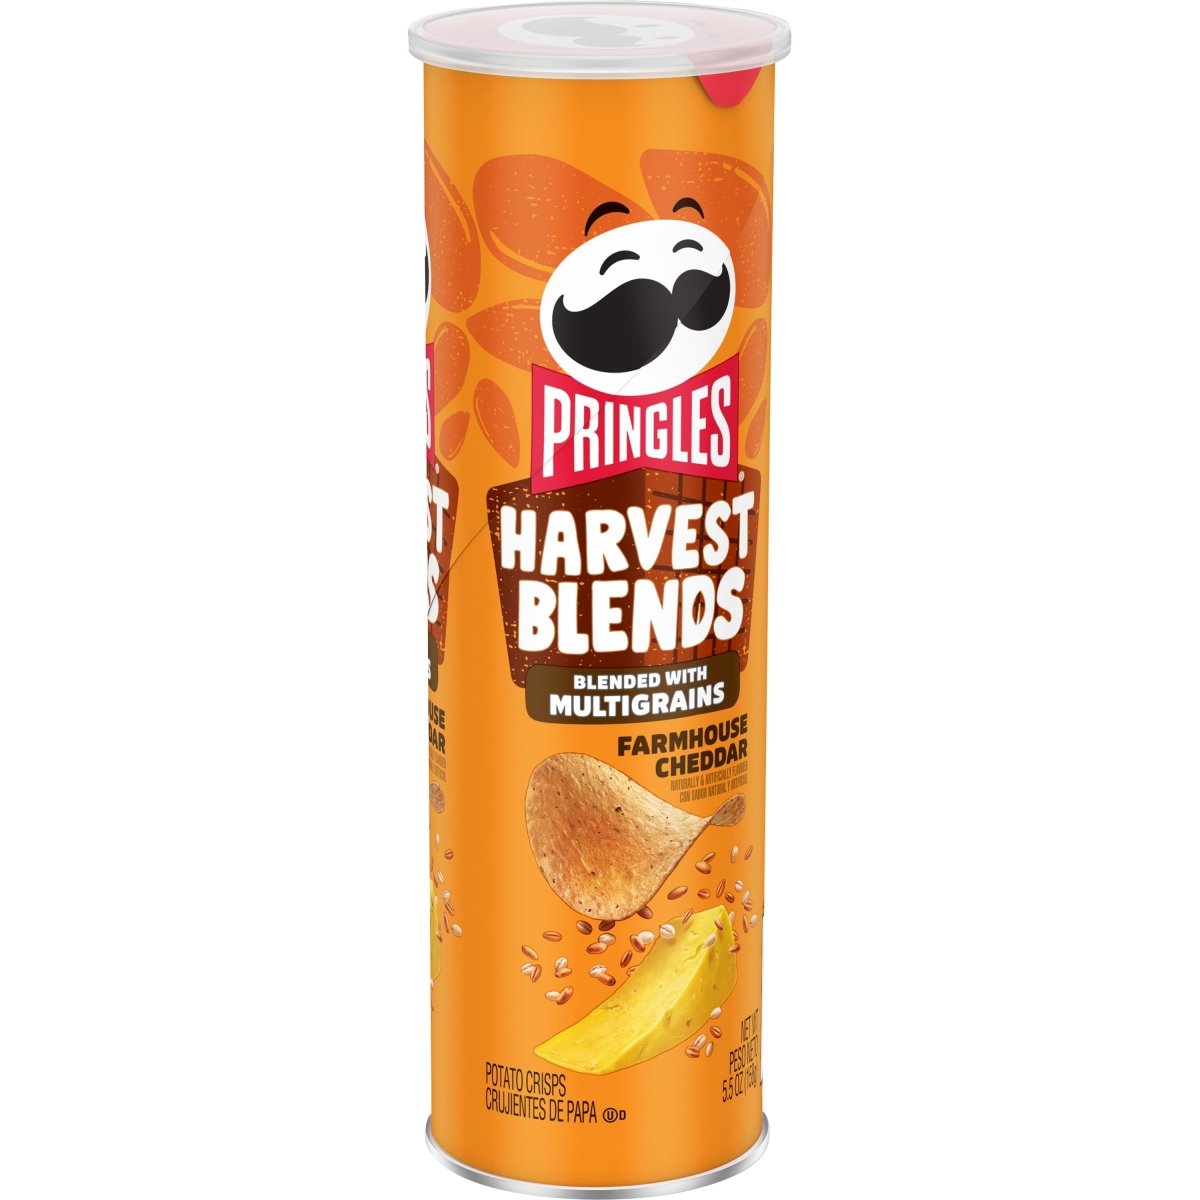 Pringles Harvest Blends Farmhouse Cheddar Crisps 158g - Candy Mail UK